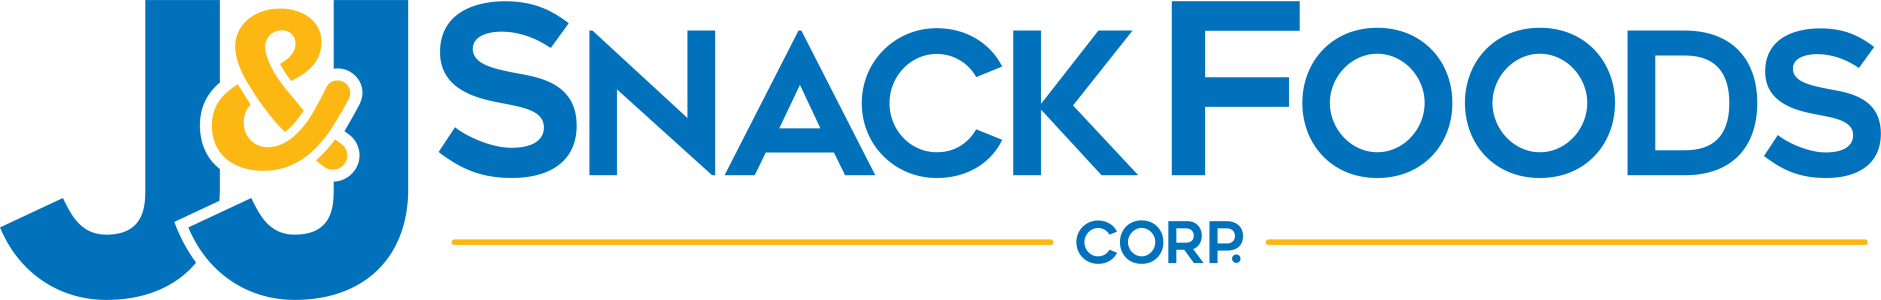 JJ Snacks Logo Logo